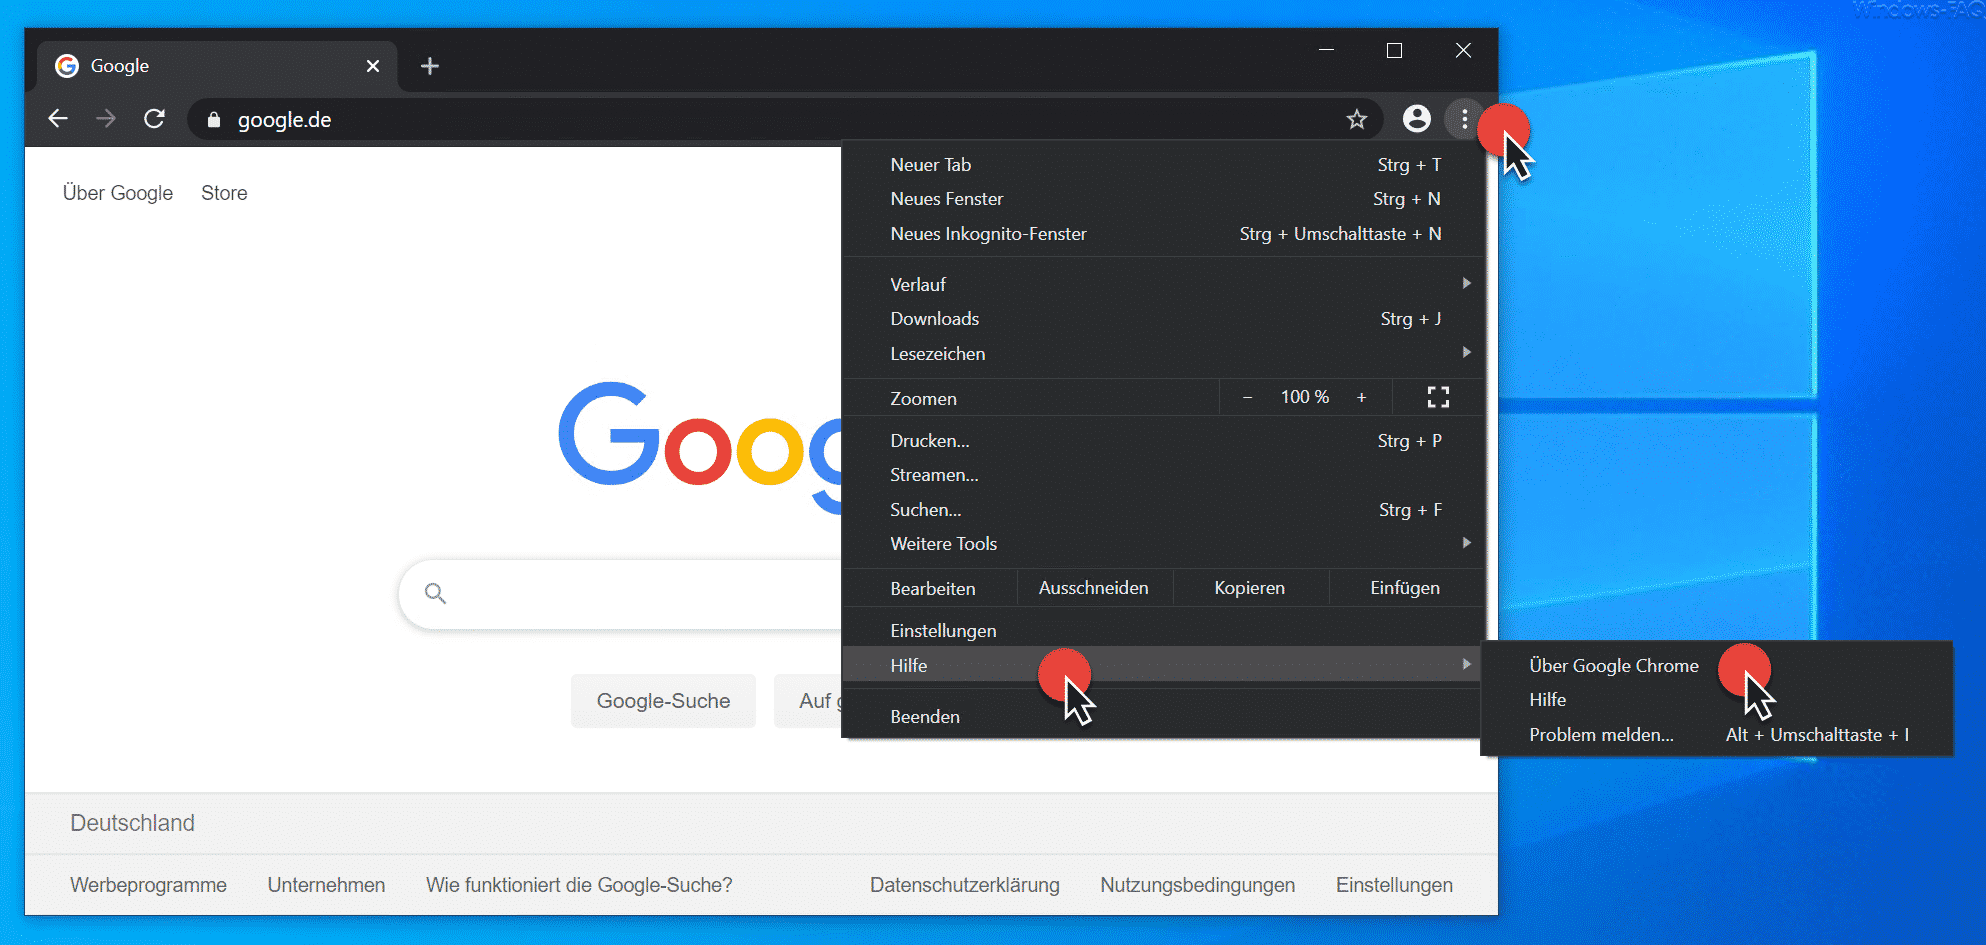 2. Aktualisieren auf die neueste Version von Google Chrome
3. Verwendung des Task-Managers von Chrome zur Identifizierung und Beendigung von unnötigen Prozessen